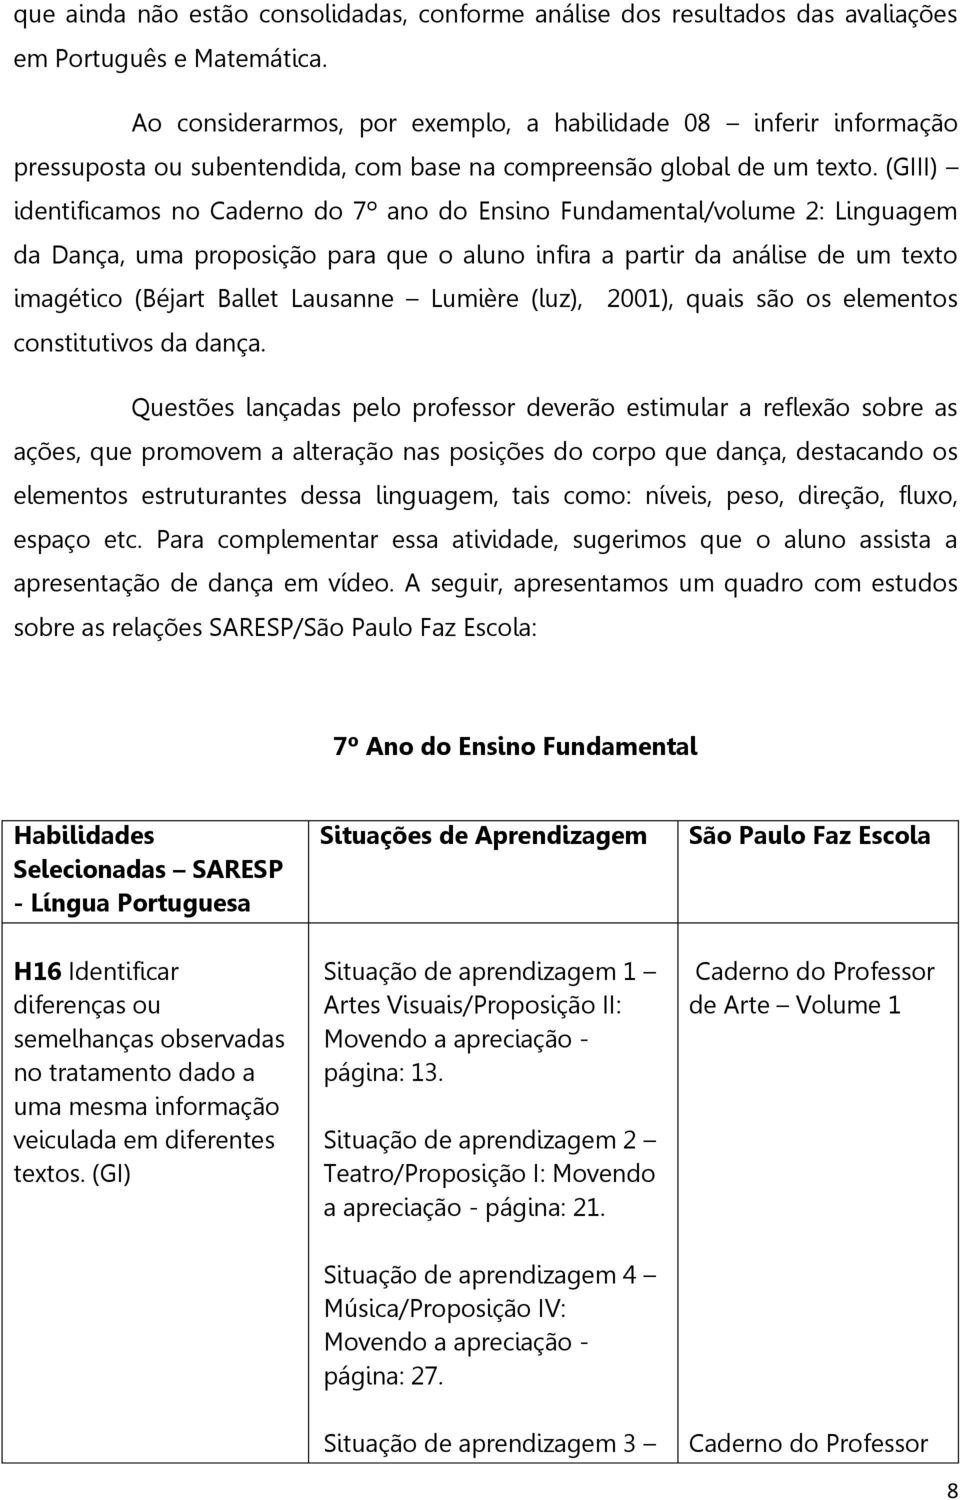 (GIII) identificamos no Caderno do 7º ano do Ensino Fundamental/volume 2: Linguagem da Dança, uma proposição para que o aluno infira a partir da análise de um texto imagético (Béjart Ballet Lausanne